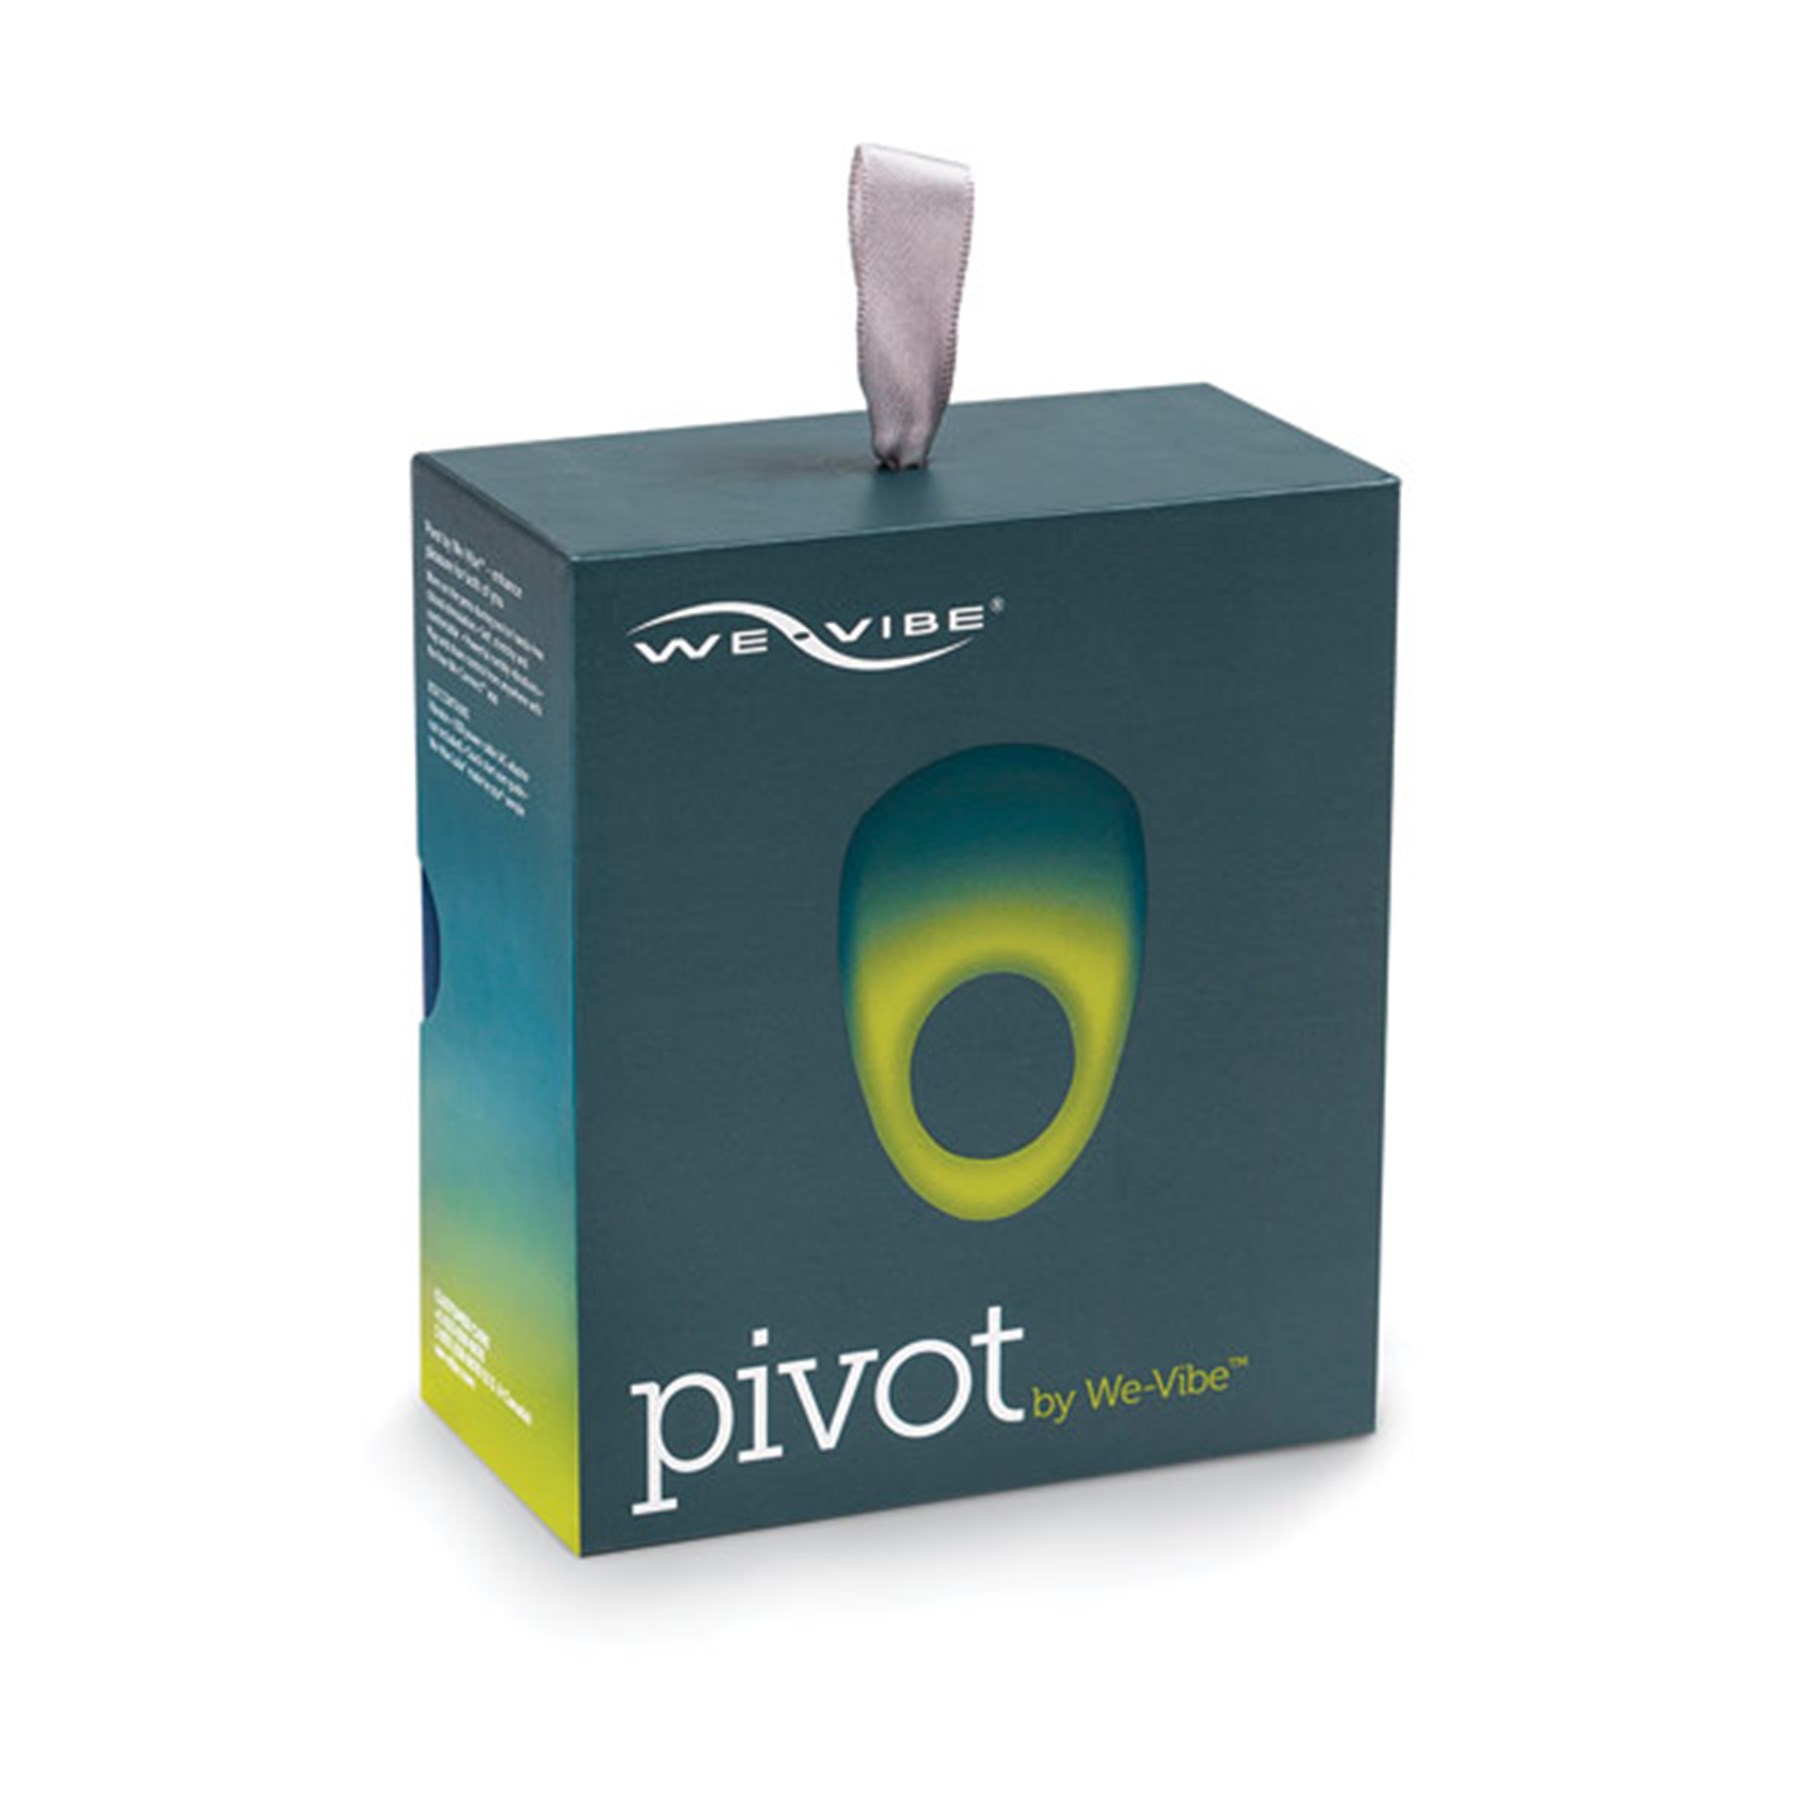 Pivot By We-Vibe Vibrating Ring box